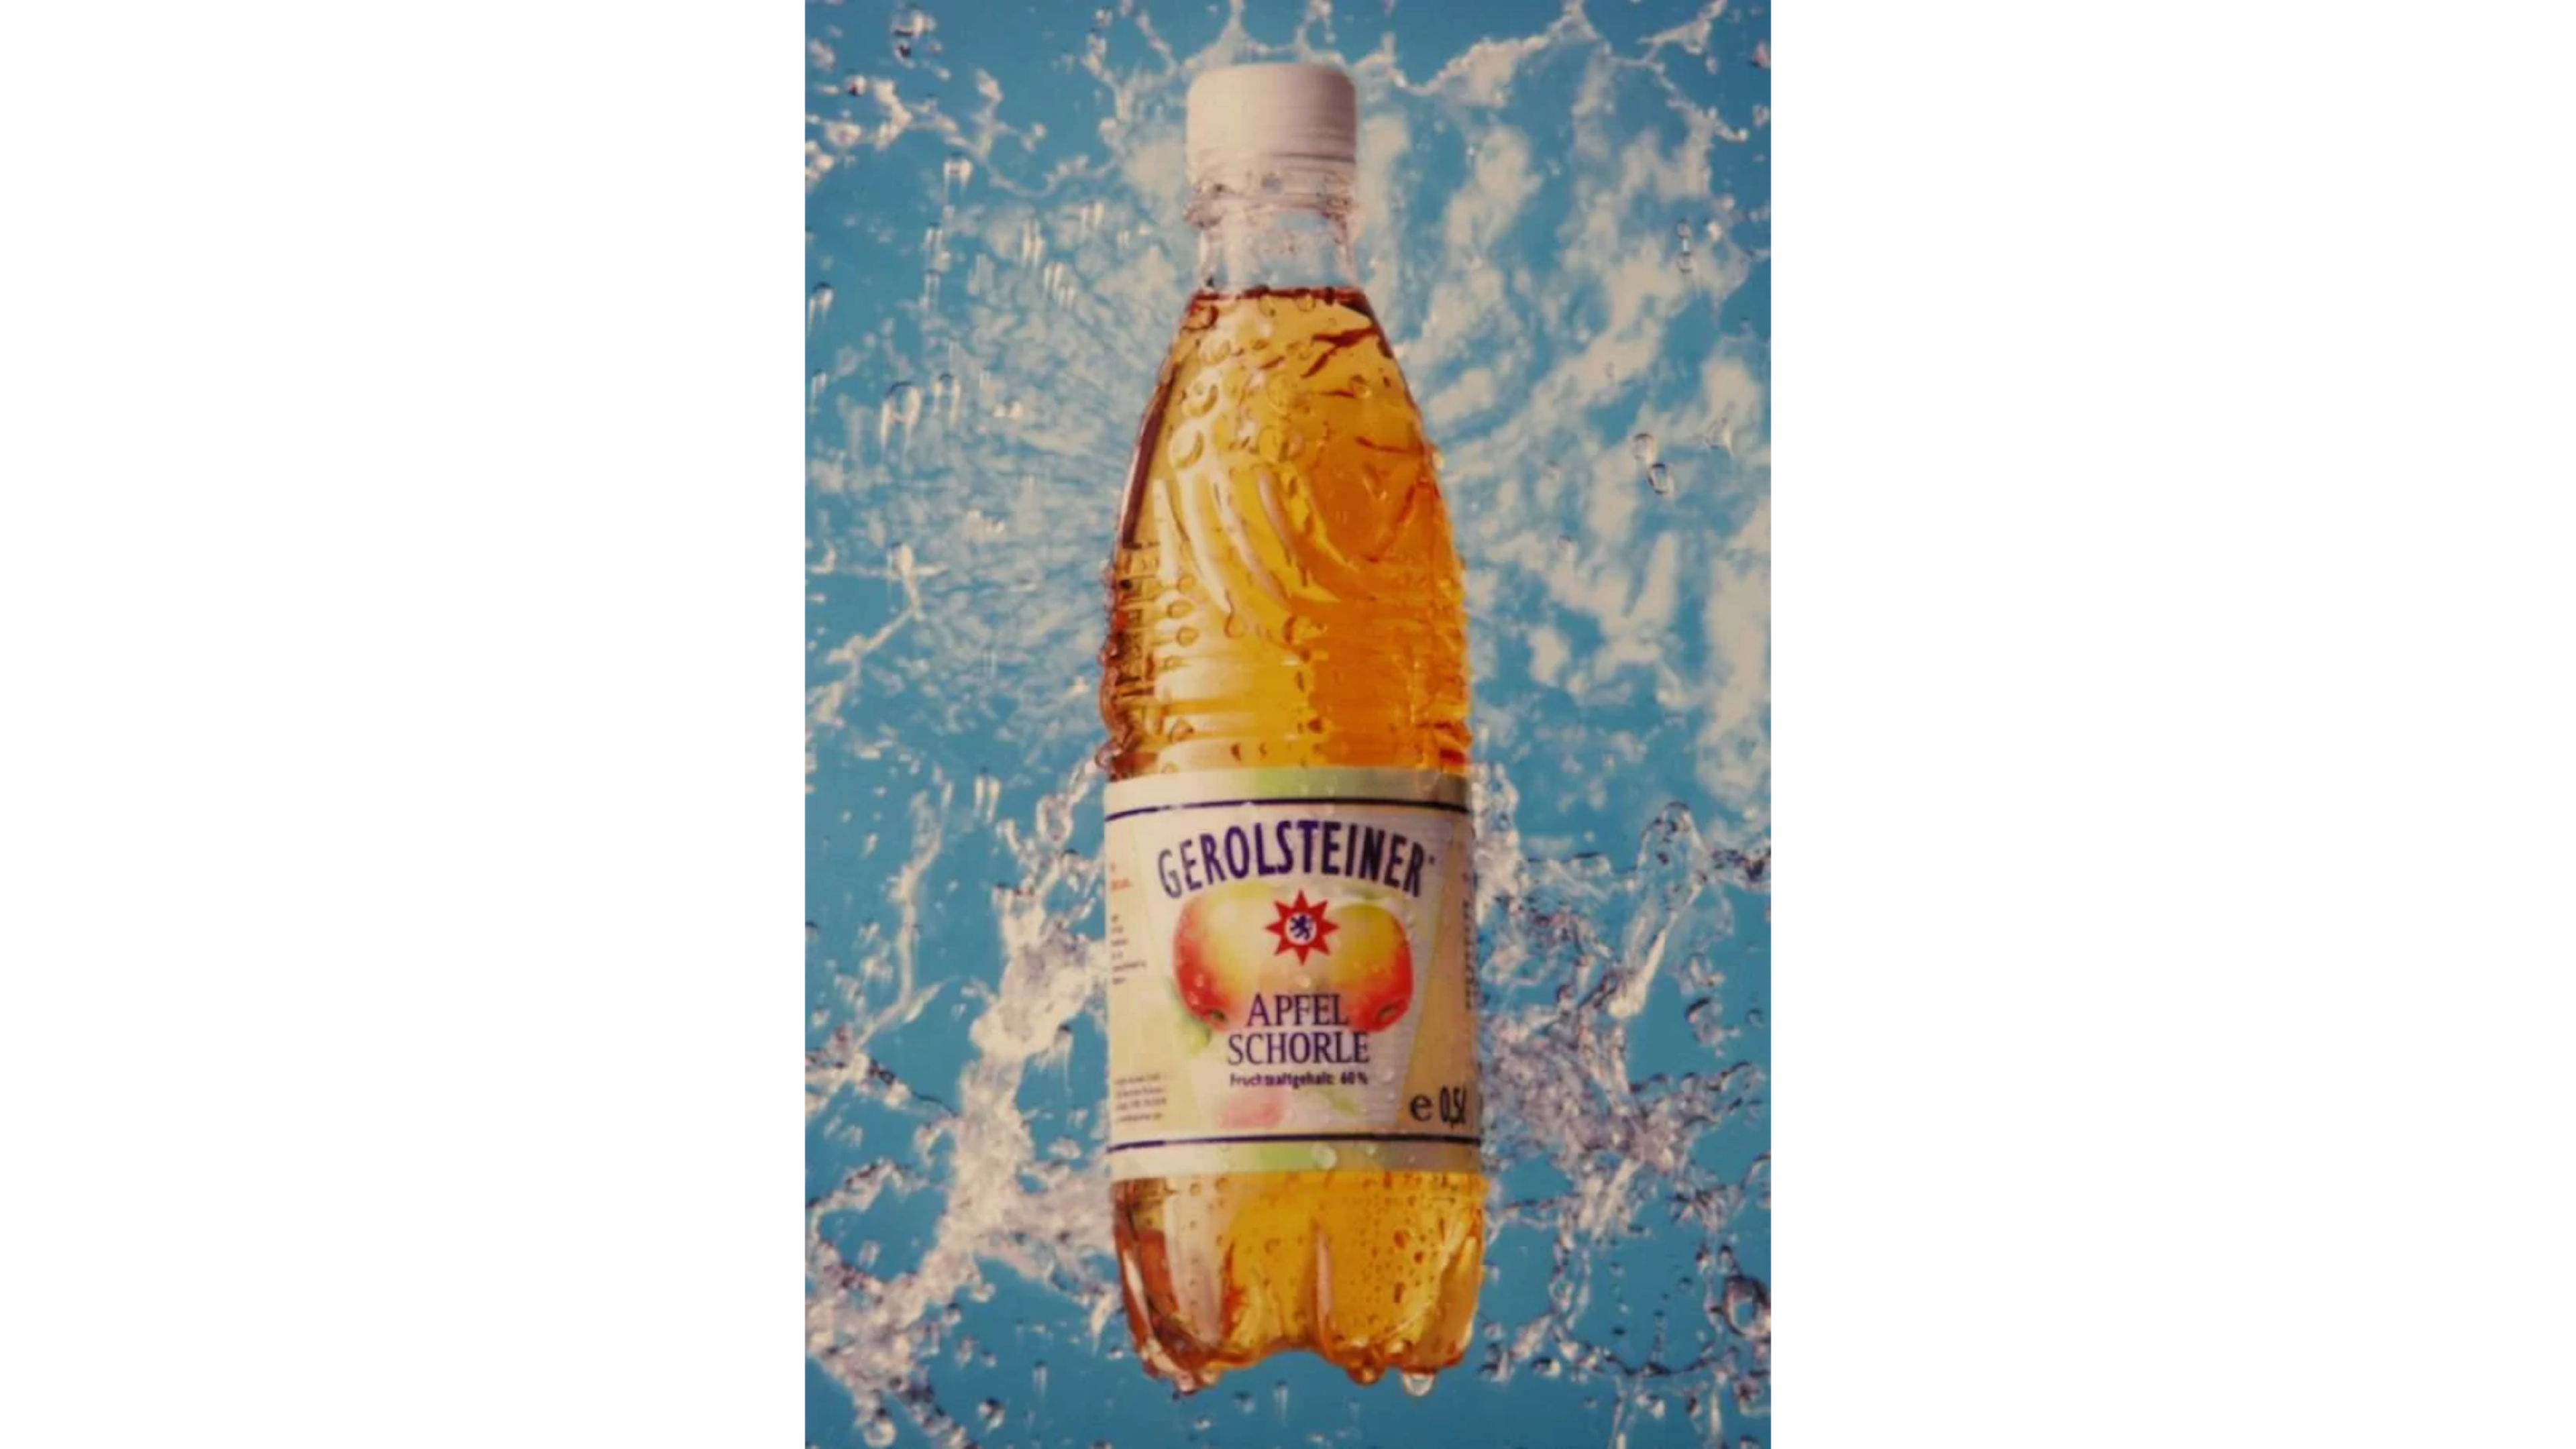 Eine Anzeige der Gerolsteiner Apfelschorle um 2001